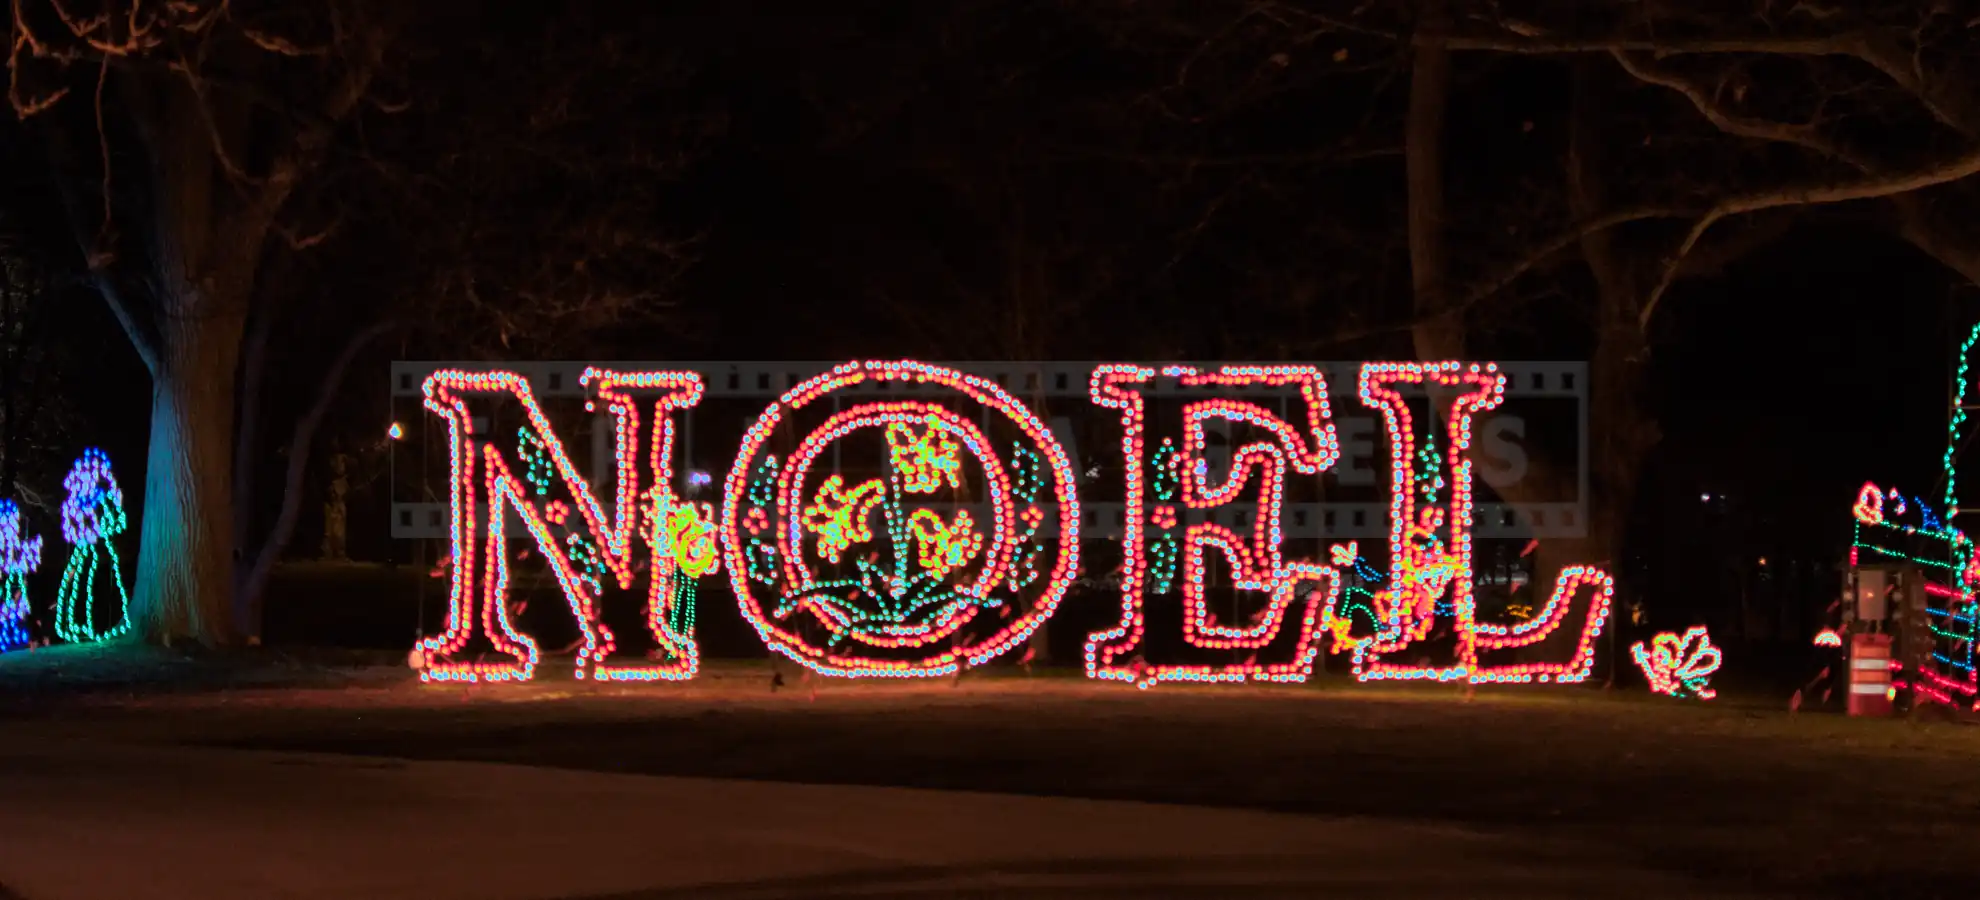 Beautiful xmas lights Noel sign in Albany, NY